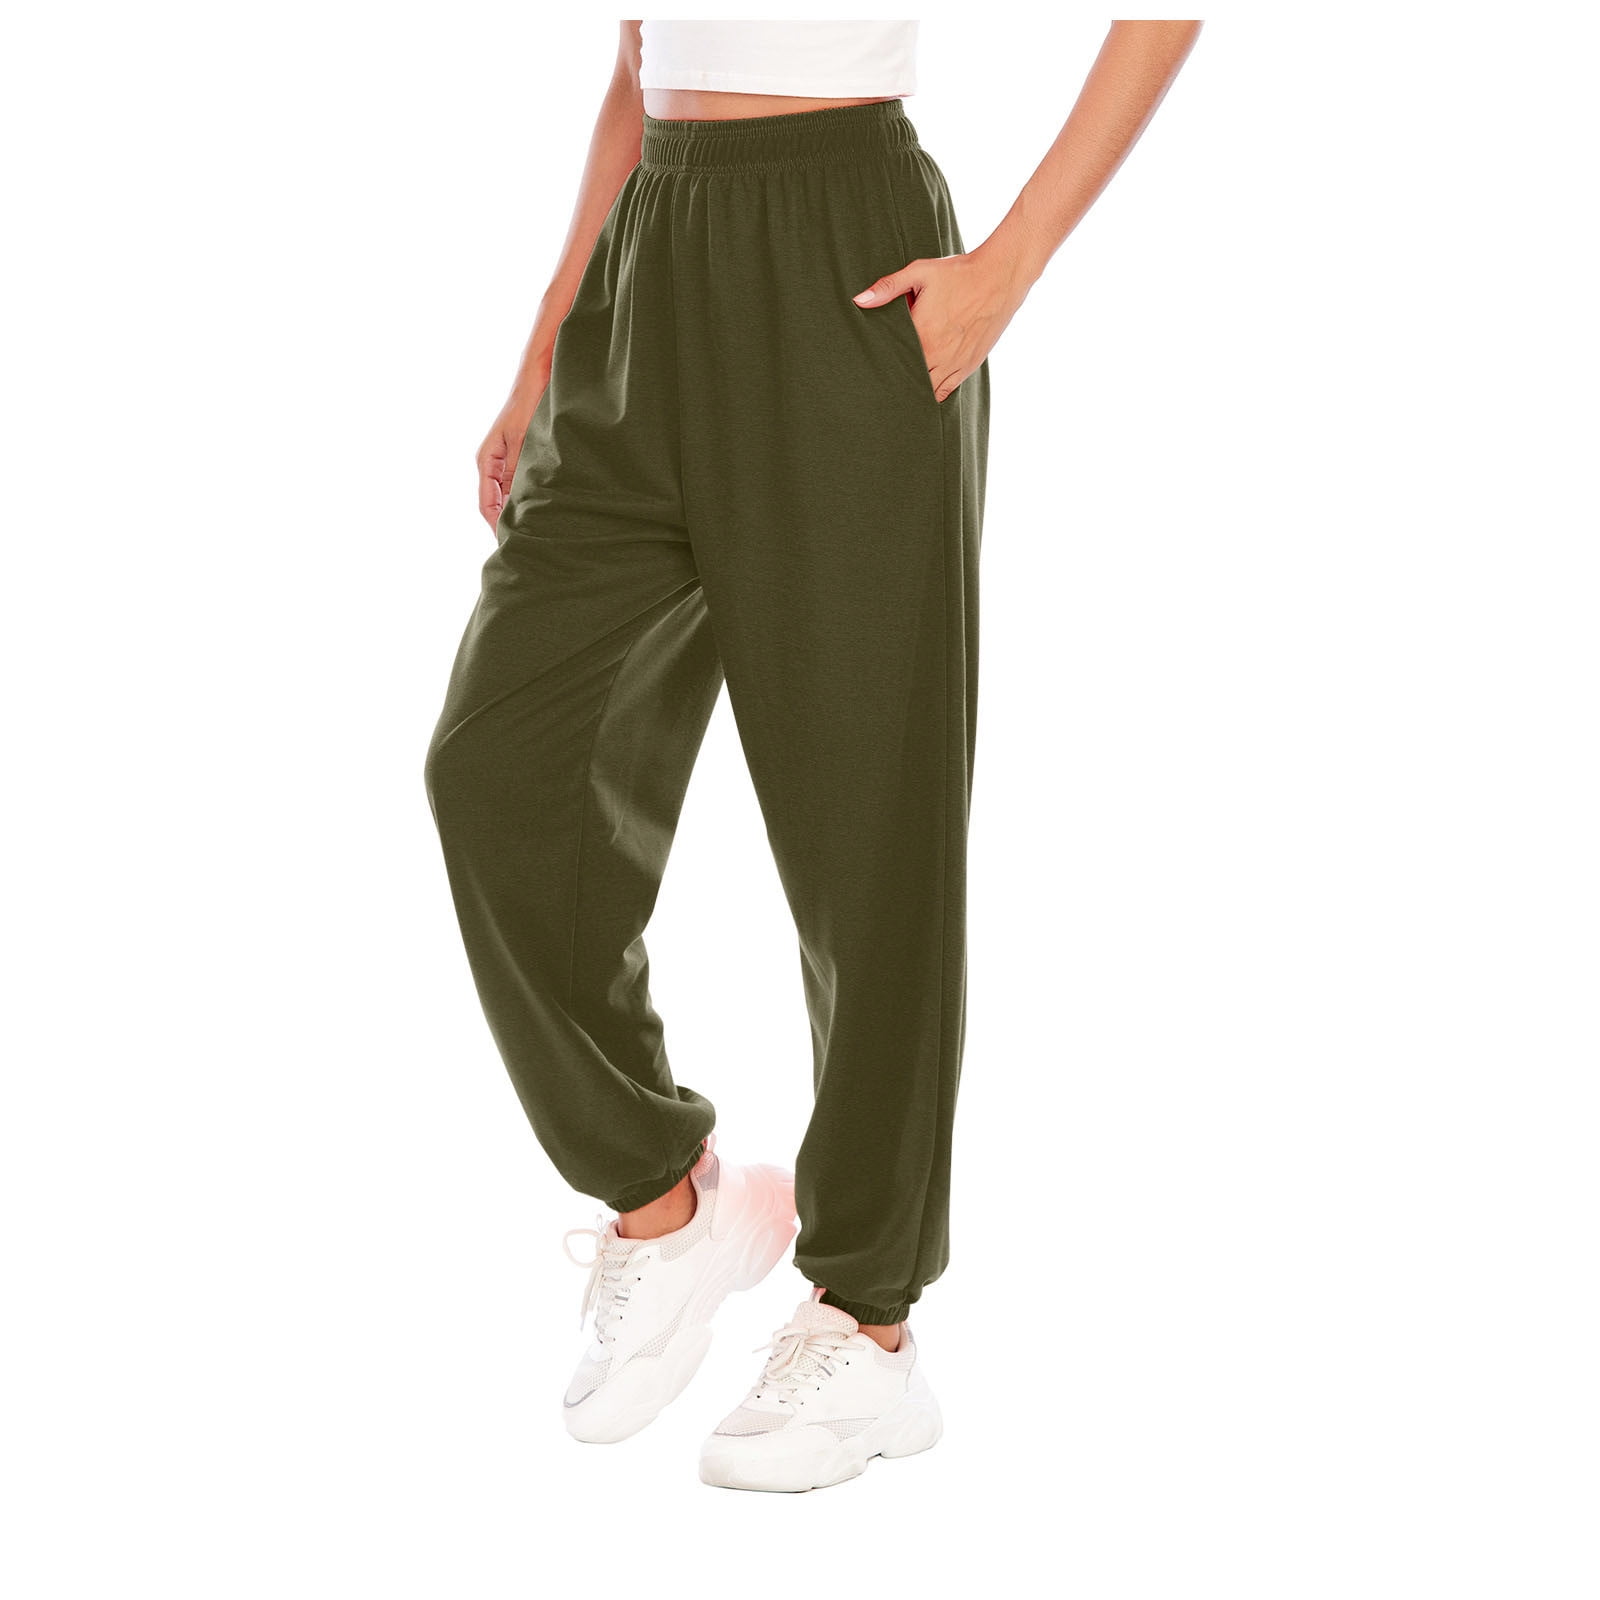 hgwxx7 pants for women plus size women sports pants trousers